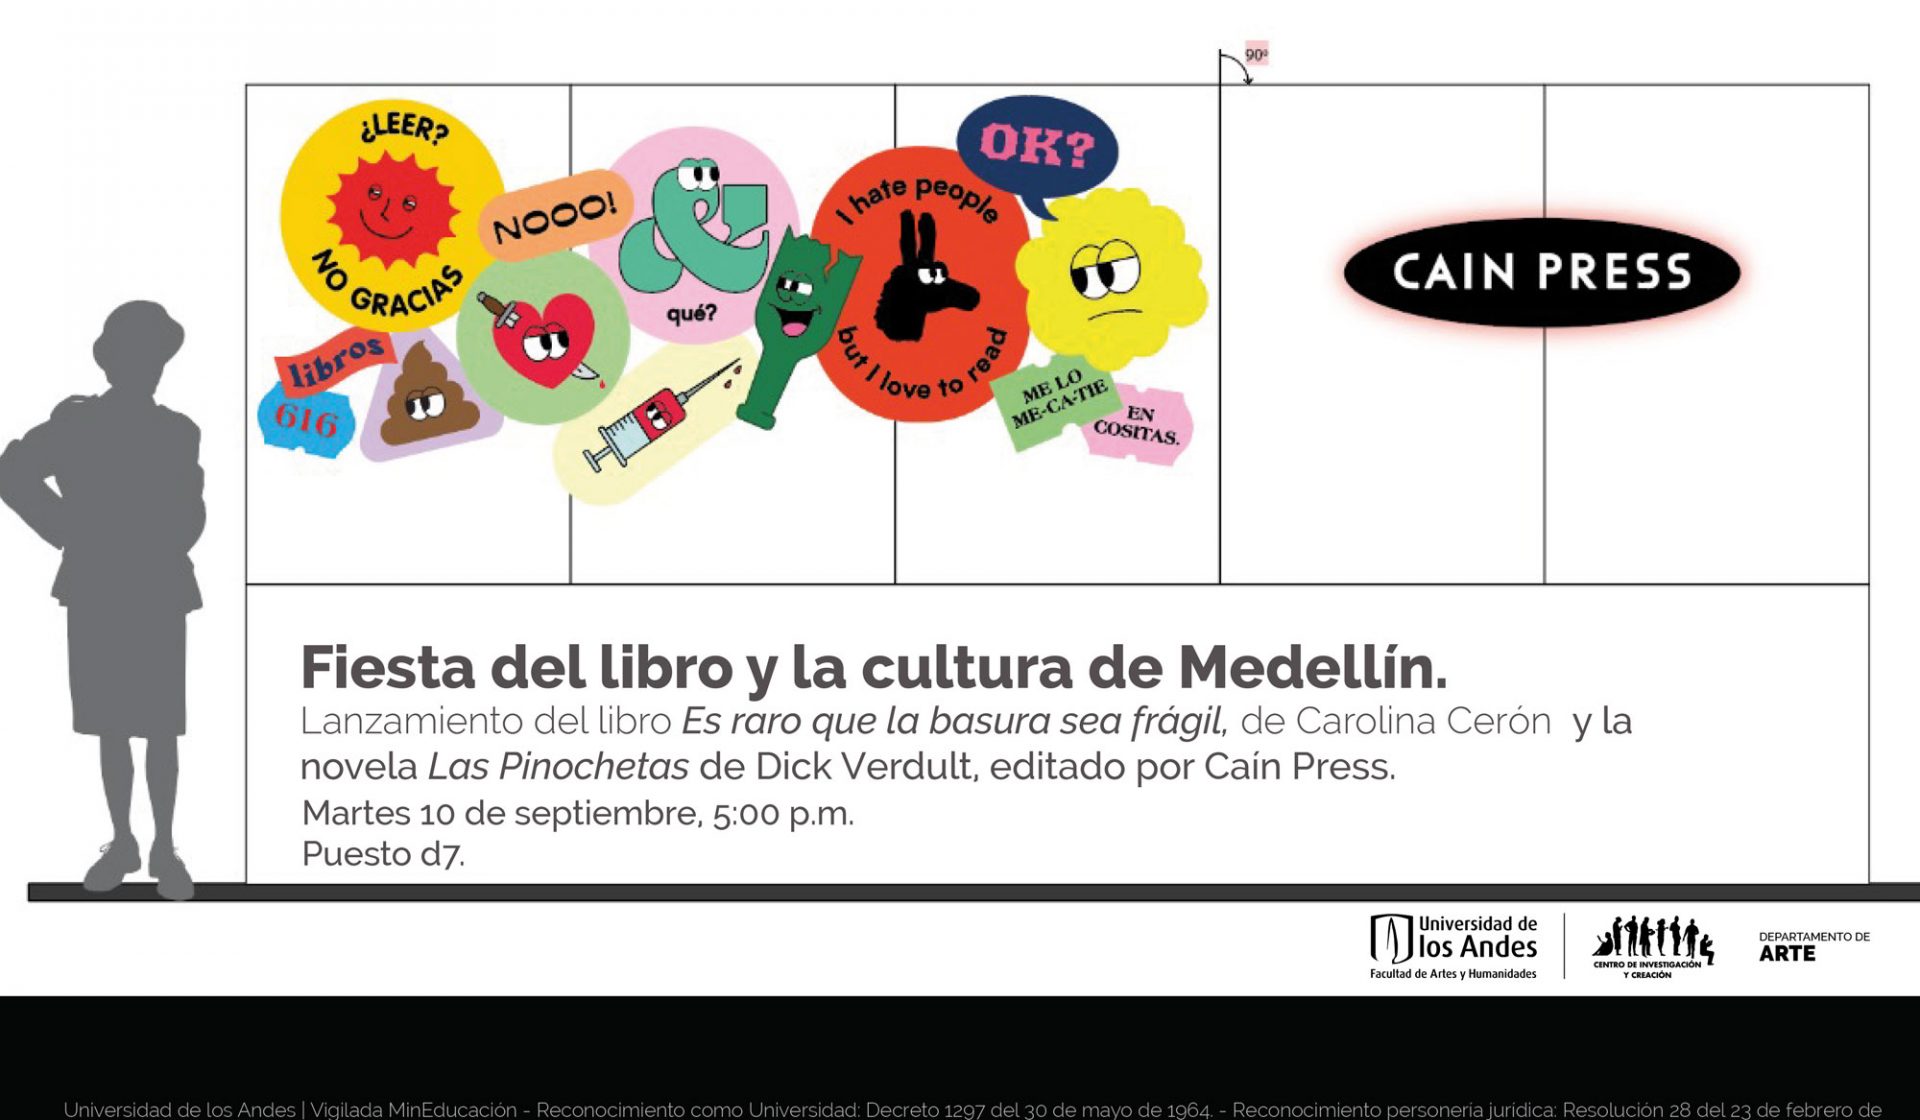 Lanzamiento del libro Es raro que la basura sea frágil, de Carolina Cerón y la novela Las Pinochetas de Dick Verdult en la Fiesta del libro y la cultura de Medellín